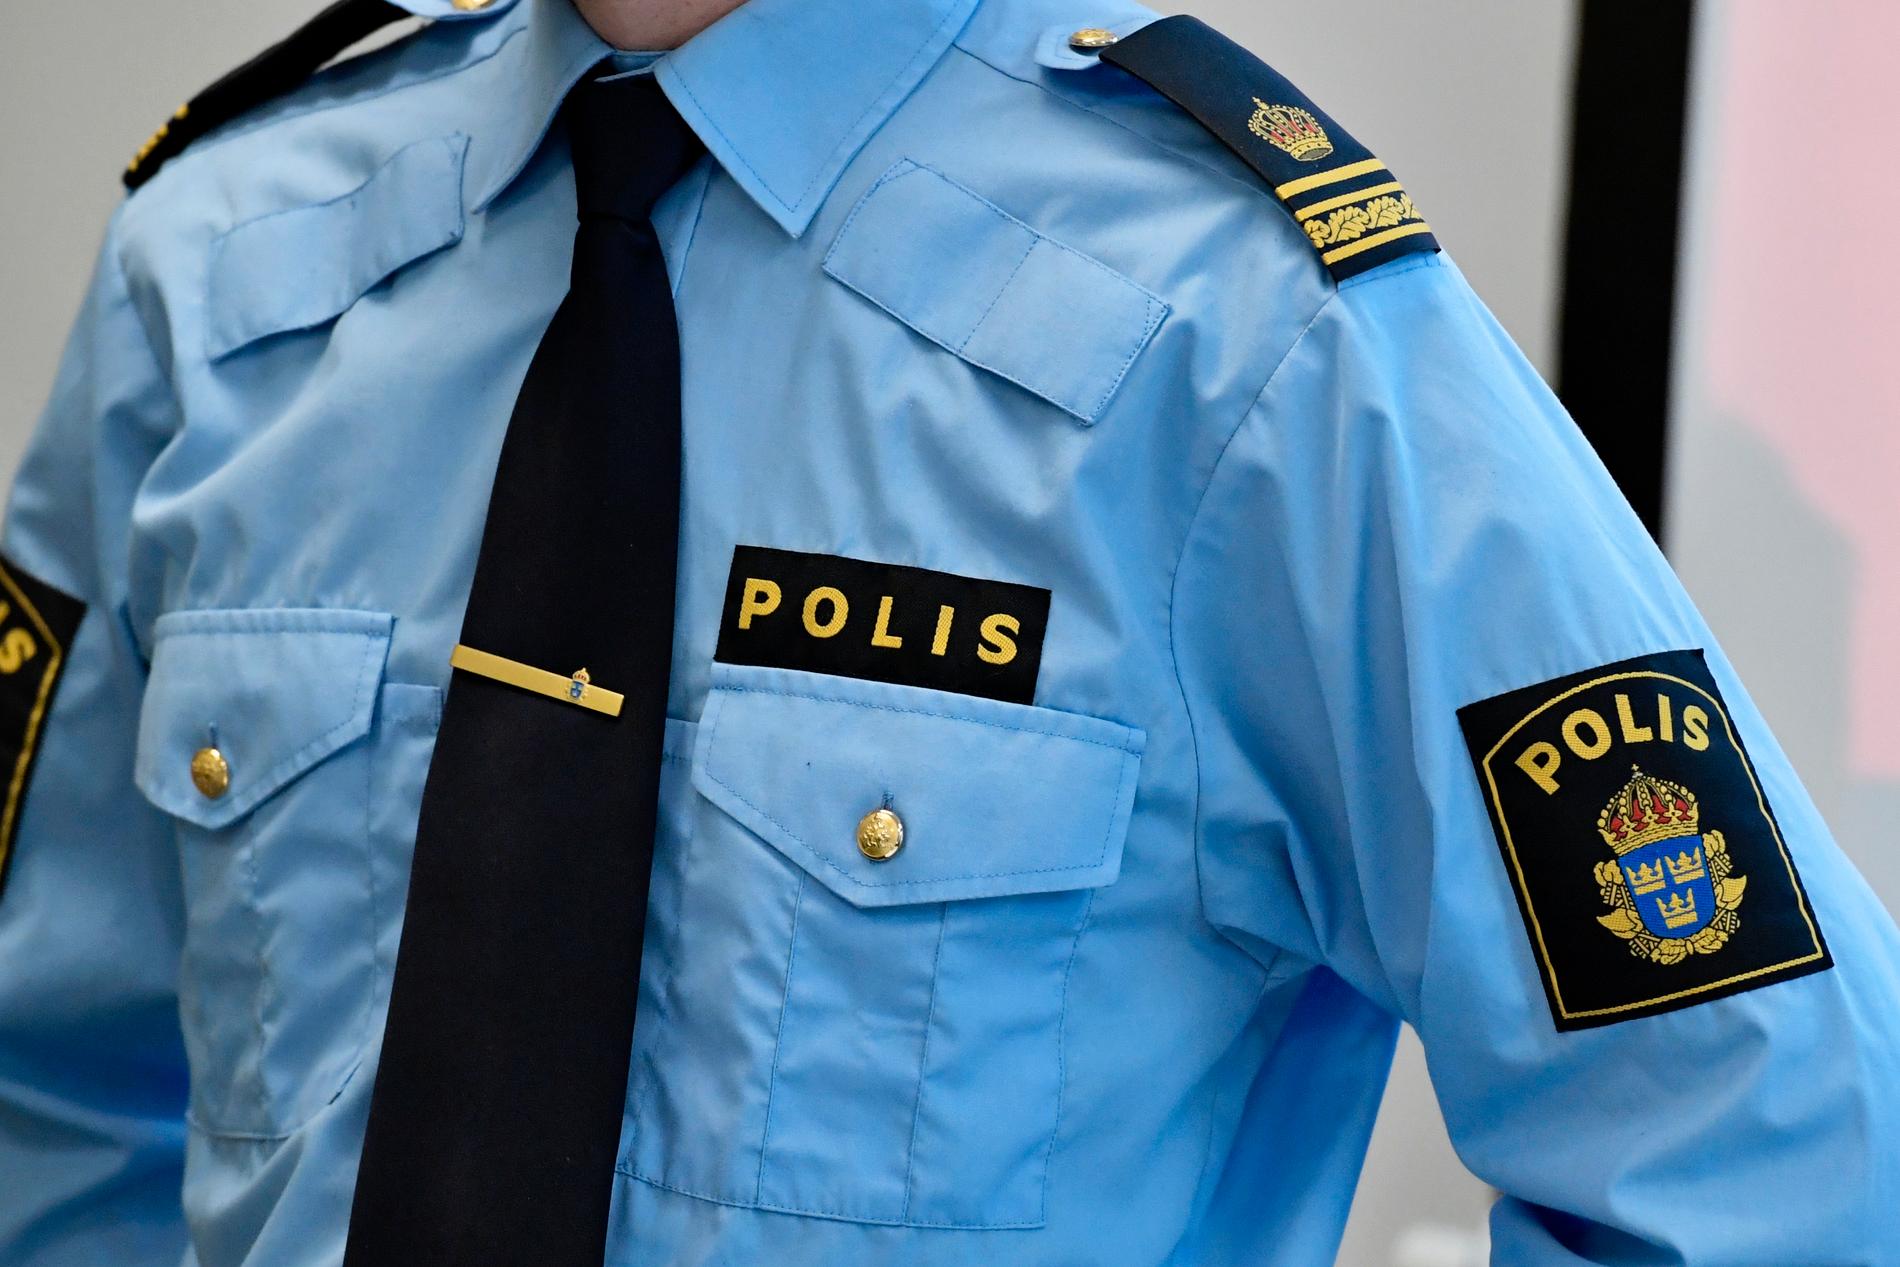 Mannen som åtalas för koppleri arbetar som polis i Stockholm. Arkivbild.